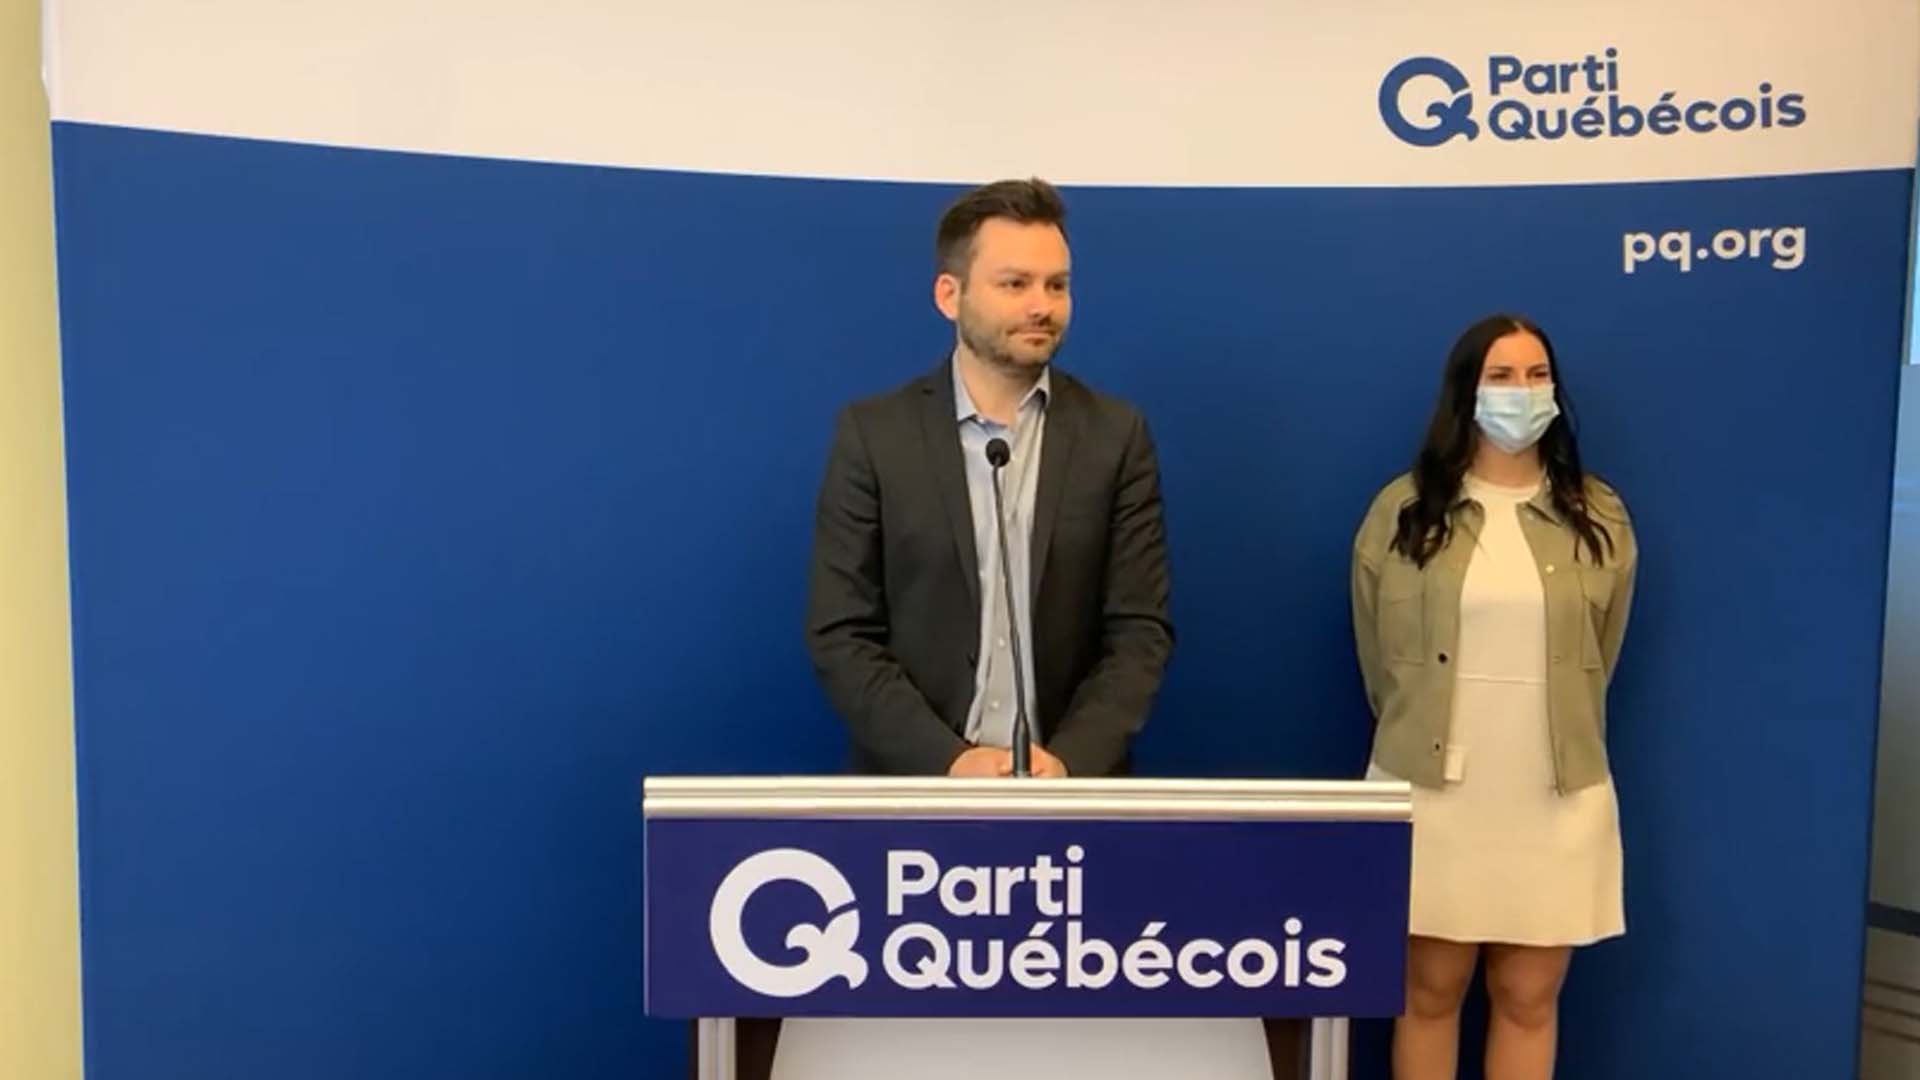 Le Québec doit donner un véritable «coup de barre» pour changer la façon dont il s'occupe de ses aînés, selon le chef du PQ, Paul Saint-Pierre Plamondon (photo).